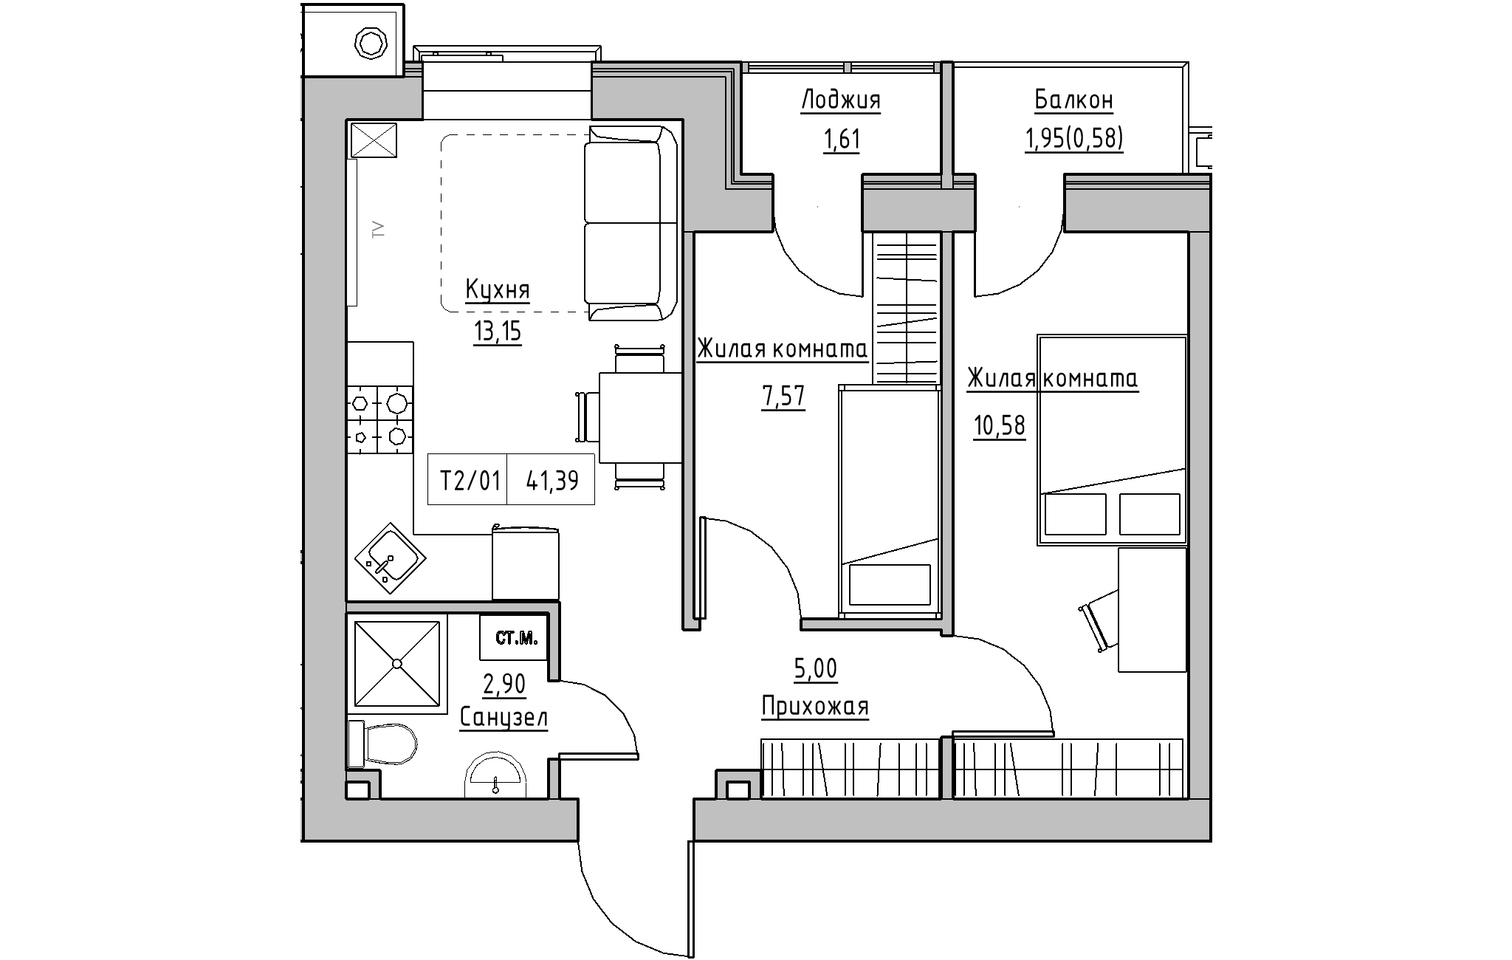 Планировка 2-к квартира площей 41.39м2, KS-013-02/0009.